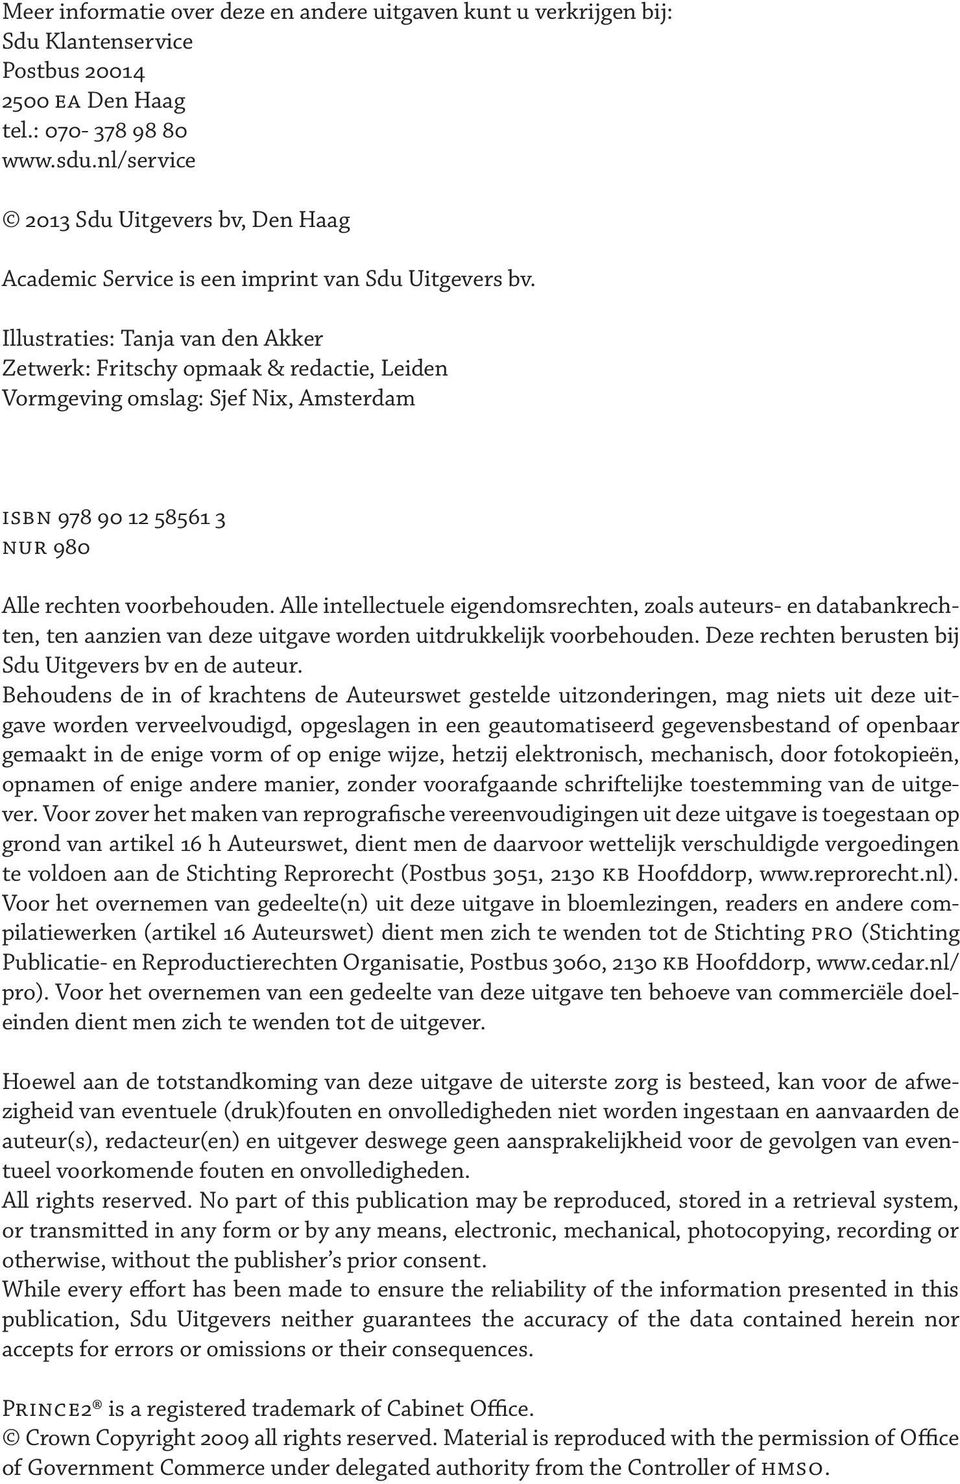 Illustraties: Tanja van den Akker Zetwerk: Fritschy opmaak & redactie, Leiden Vormgeving omslag: Sjef Nix, Amsterdam ISBN 978 90 12 58561 3 NUR 980 Alle rechten voorbehouden.